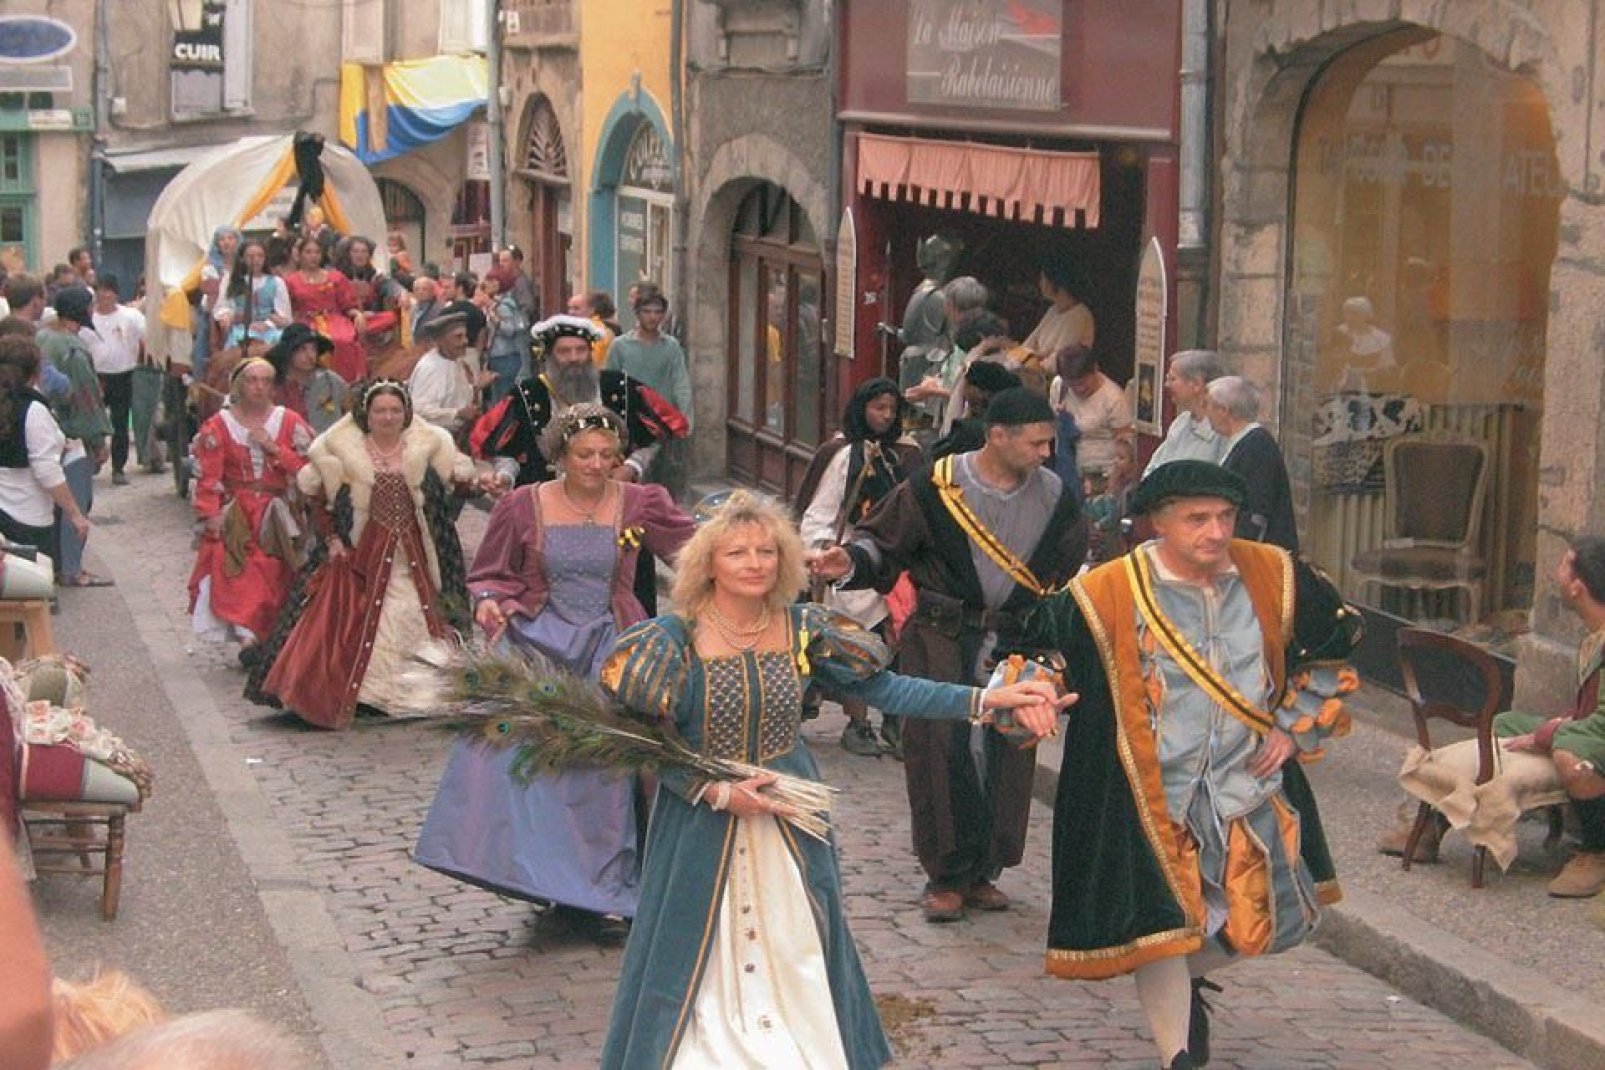 In settembre la città organizza una grande festa della rinascita. In questa occasione è possibile scoprire i costumi dell'epoca e assistere a delle rievocazioni storiche.